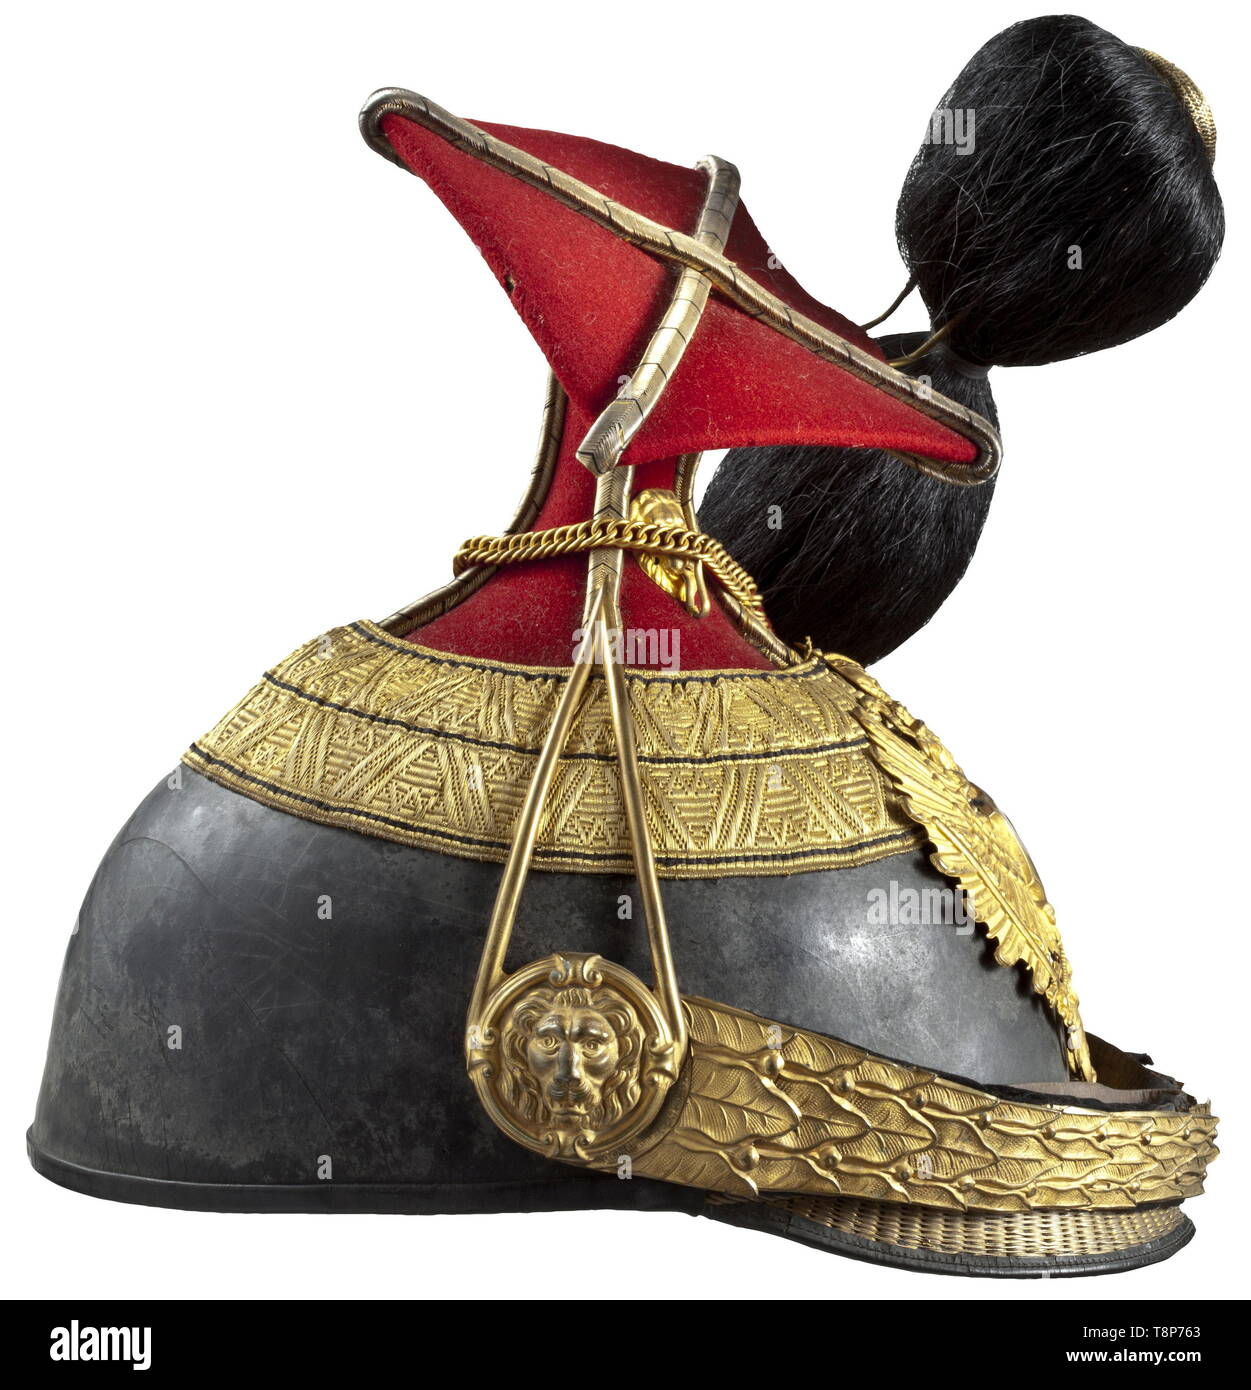 Une czapka et une boîte de cartouches de cavalerie capitaine Hans Schönbichler du Régiment n° 6 Landwehr-Uhlan austro-hongrois Czapka de cuir noir, crâne rouge garance, carré de tissu corde d'argent. Pochettes en cuir doré, bordées de jugulaires de bagues, de l'emblème liés avec le régiment de poing numéro '6', buffalo noir plume cheveux dorés, tête de lion sur les chaînes d'or de patrons, indiquant le rang du cordon avec un central et deux bandes latérales, doublure de soie blanche, portant le nom du propriétaire dans la vieille écriture, brown bandeau. Czapka couvert d'origine, Additional-Rights Clearance-Info-ligh-Not-Available Banque D'Images